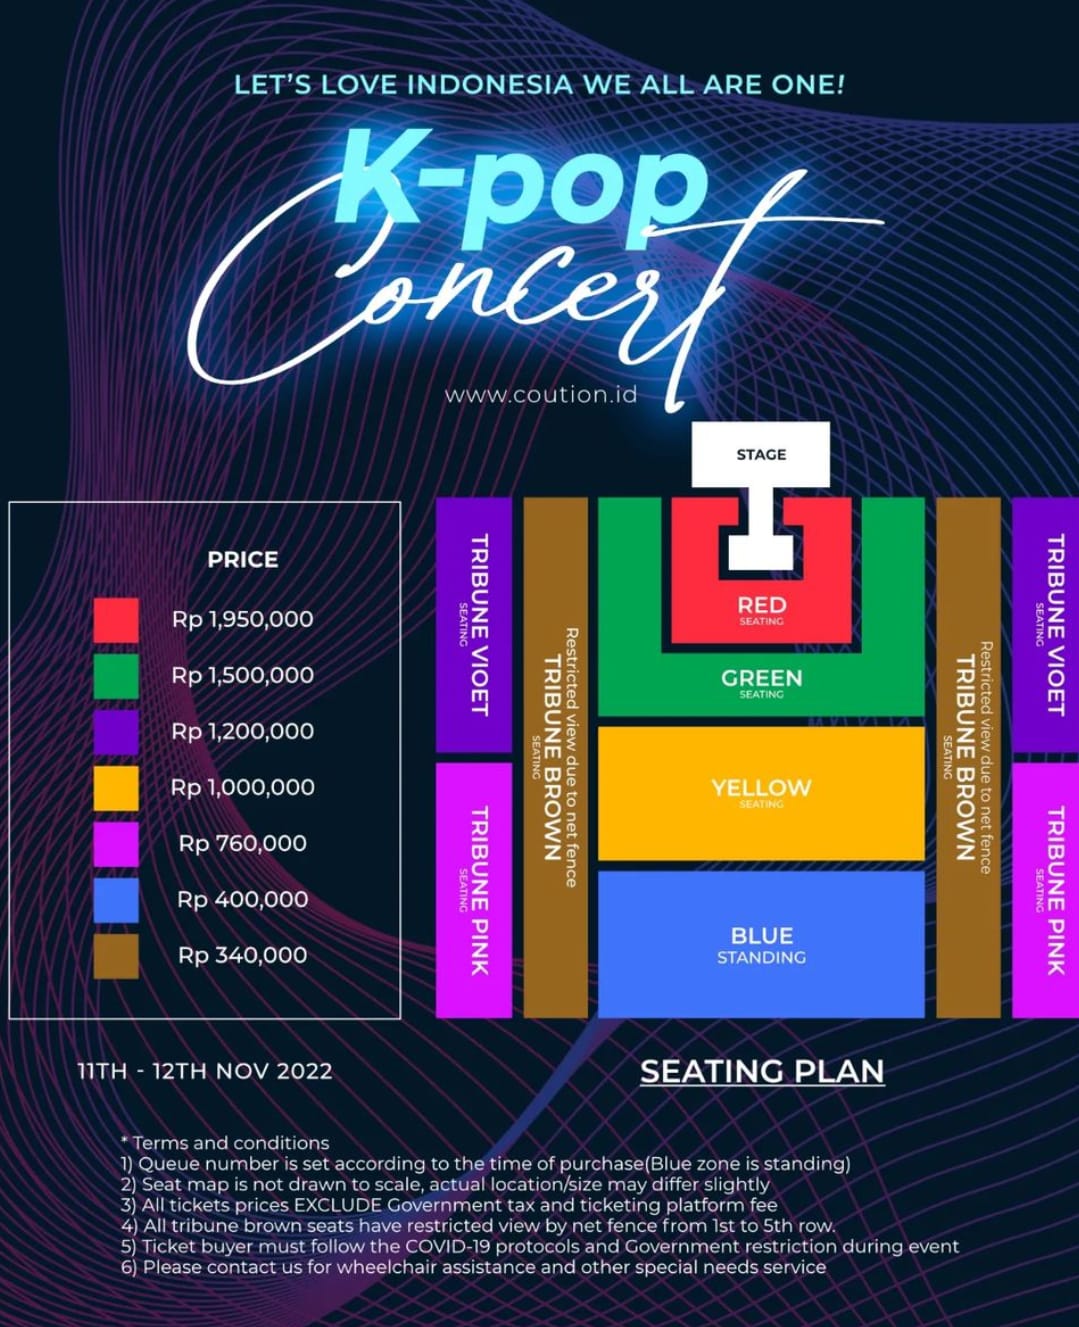 pricelist-and-seatplan_kpop-concert